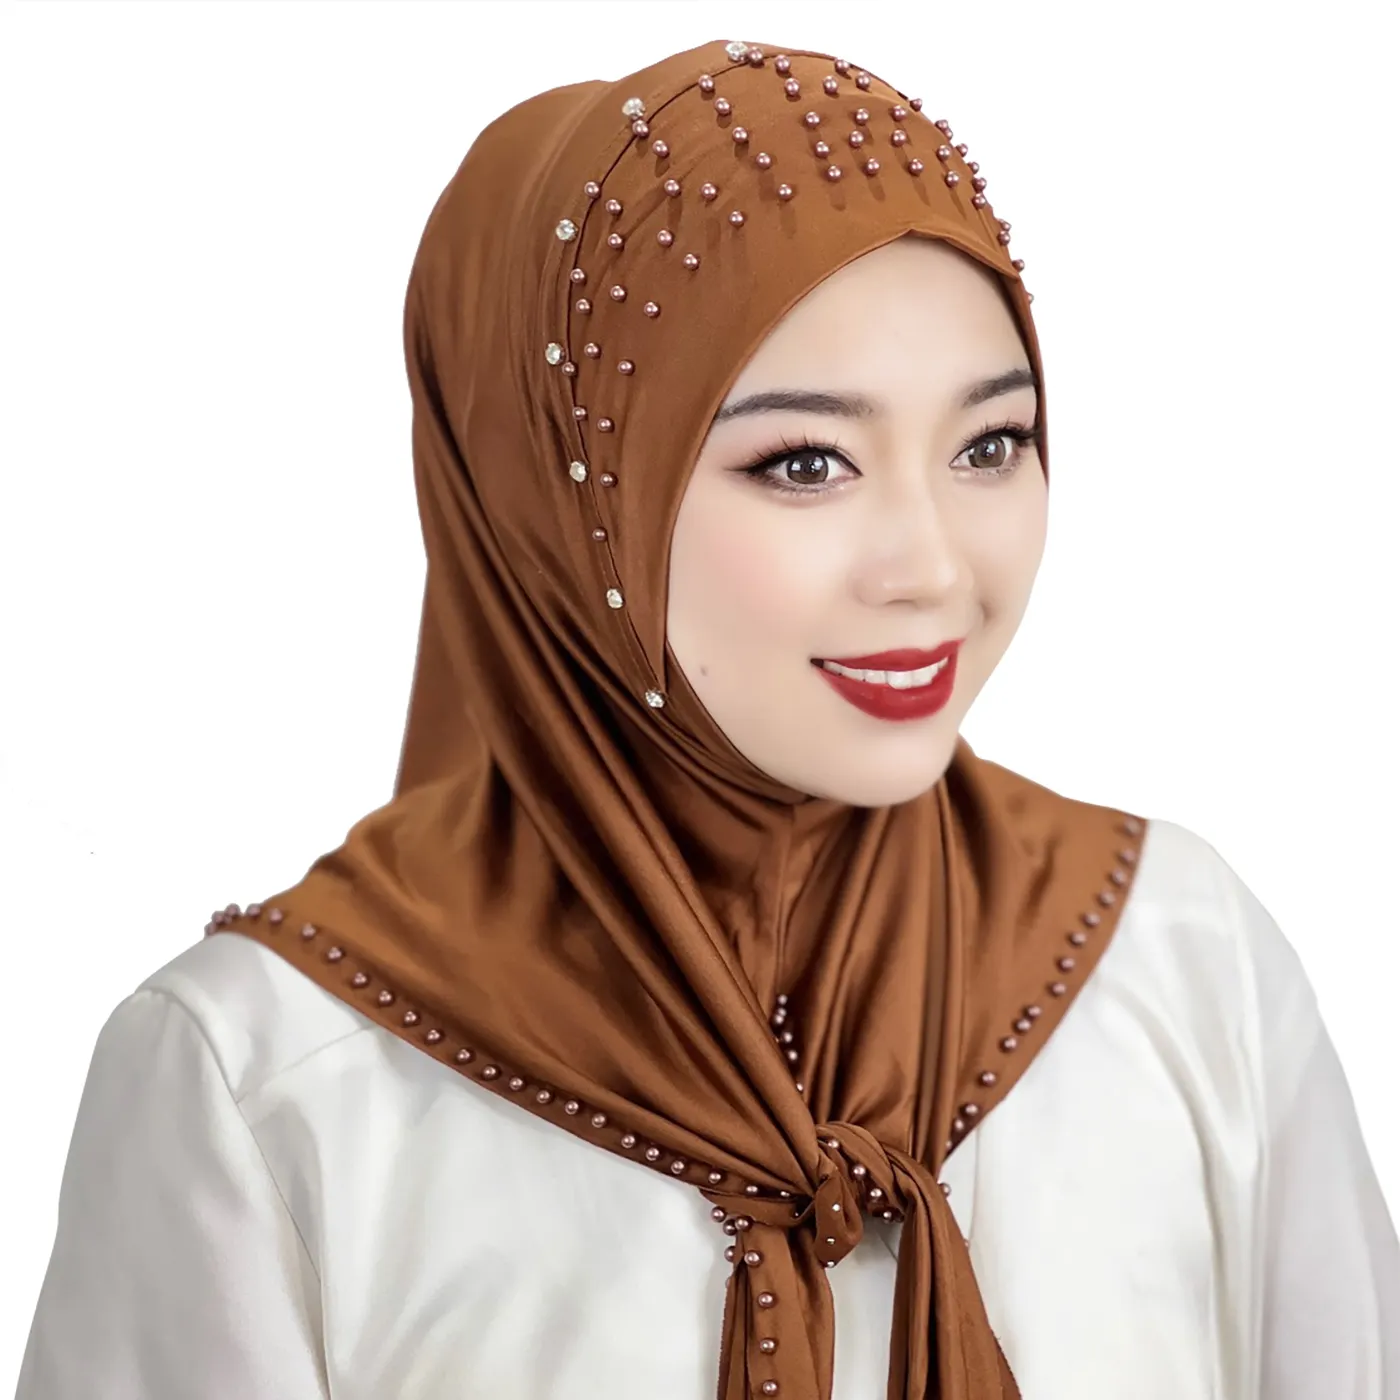 Оптовая продажа, высокое качество, хиджаб однотонных цветов с жемчужинами, бисером, традиционные консервативные женские шарфы